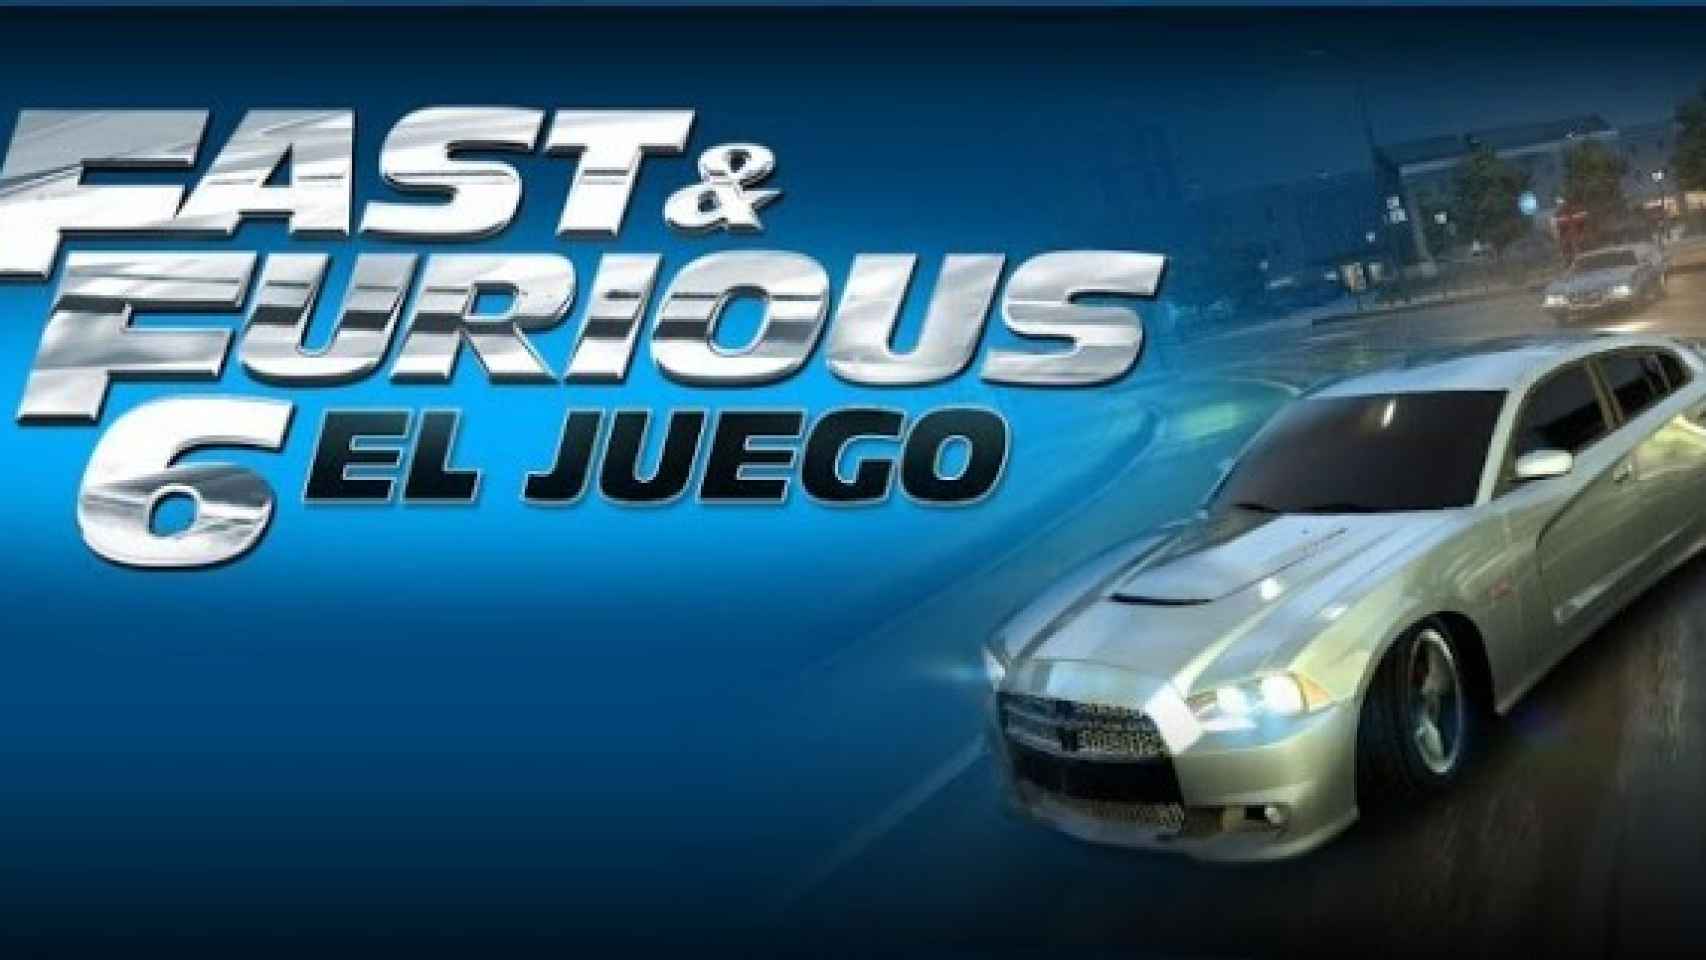 Fast & Furious 6, coches caros y velocidades extremas en el juego oficial de la película